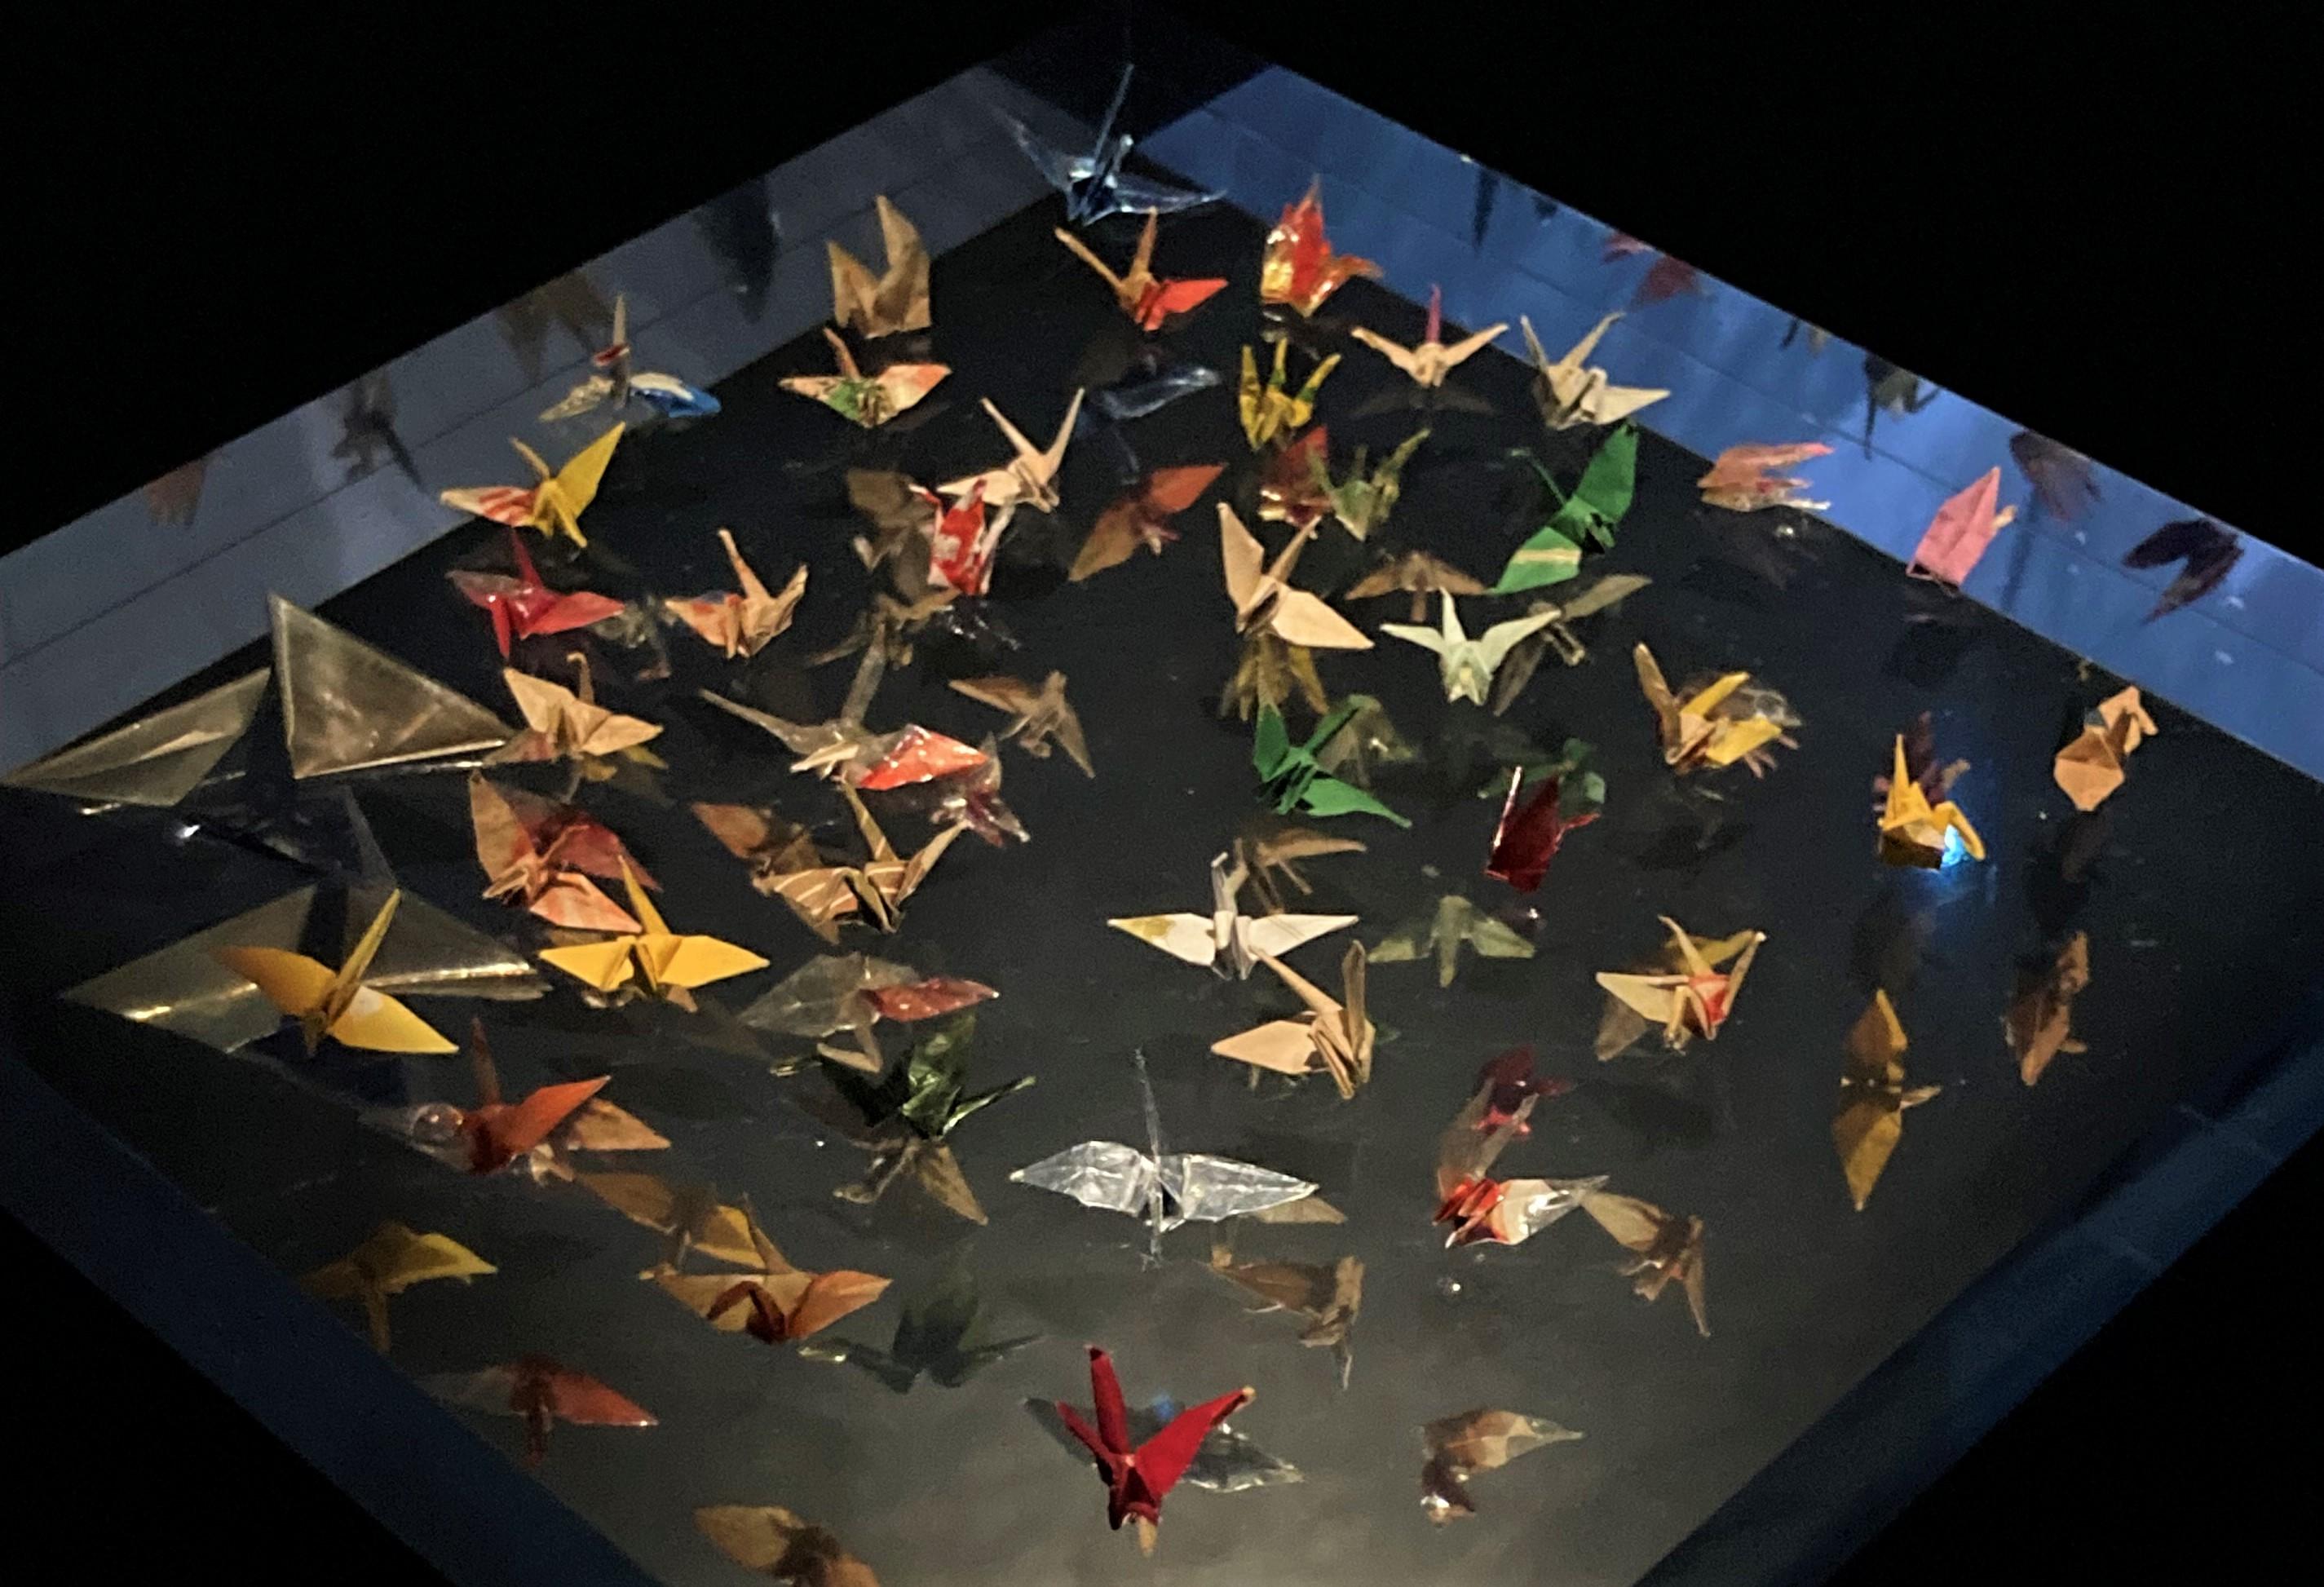 Grous de origami dobrados por Sadako enquanto estava internada, em exposição no Museu de Hiroshima